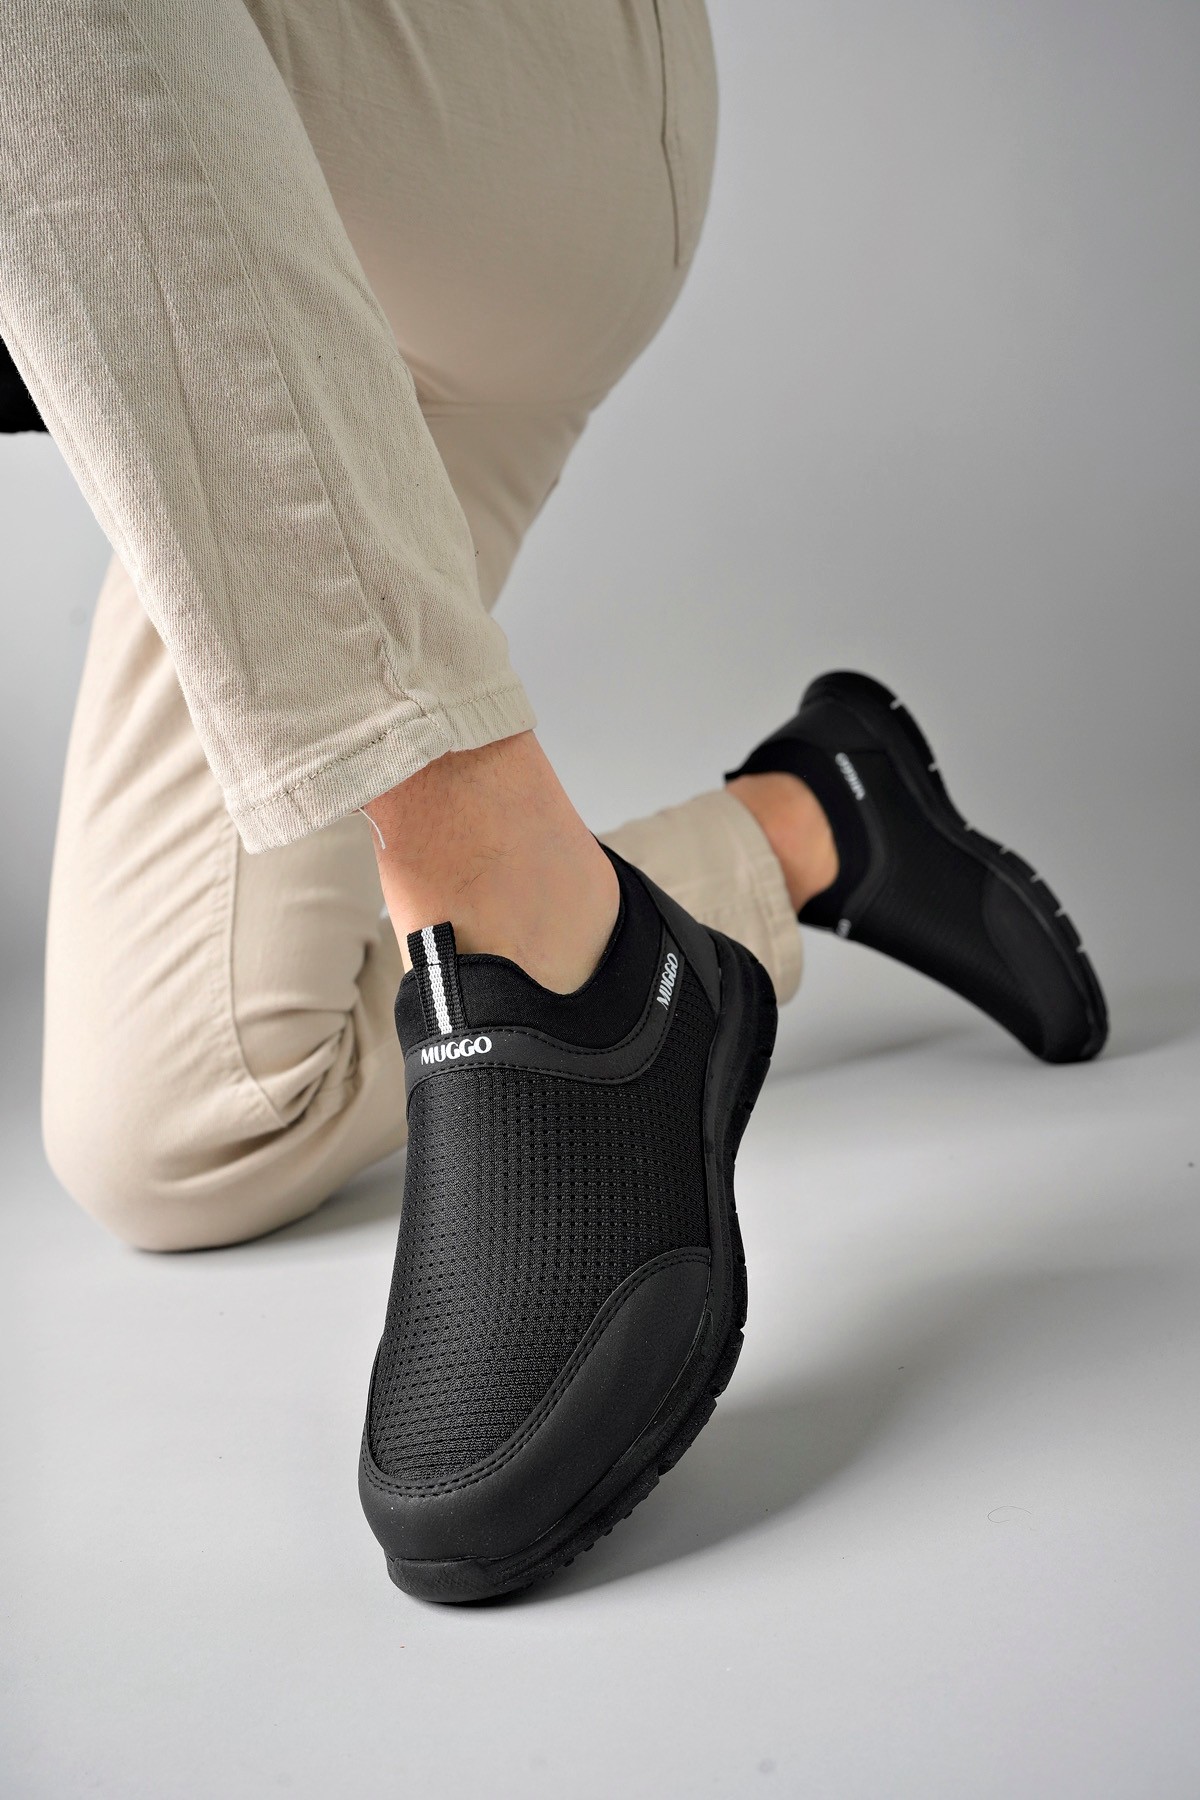 Muggo PODGO Garantili Unisex Ortopedik Bağcıksız Nefes Alabilen Hafif Yürüyüş Sneaker Spor Ayakkabı - SİYAH